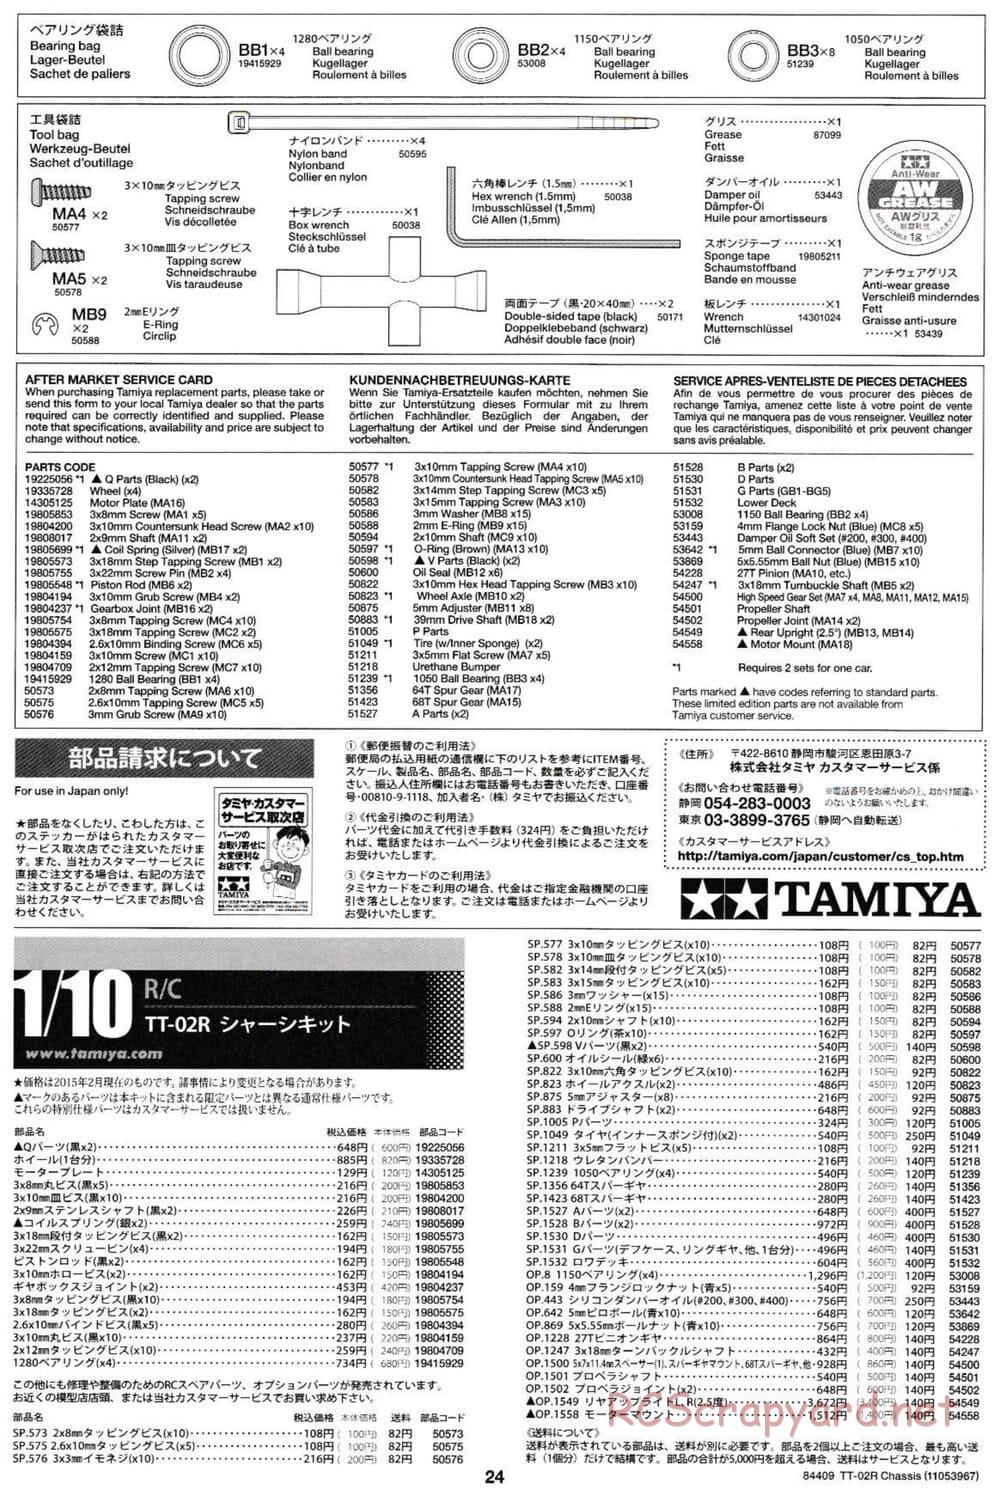 Tamiya - TT-02R Chassis - Manual - Page 24